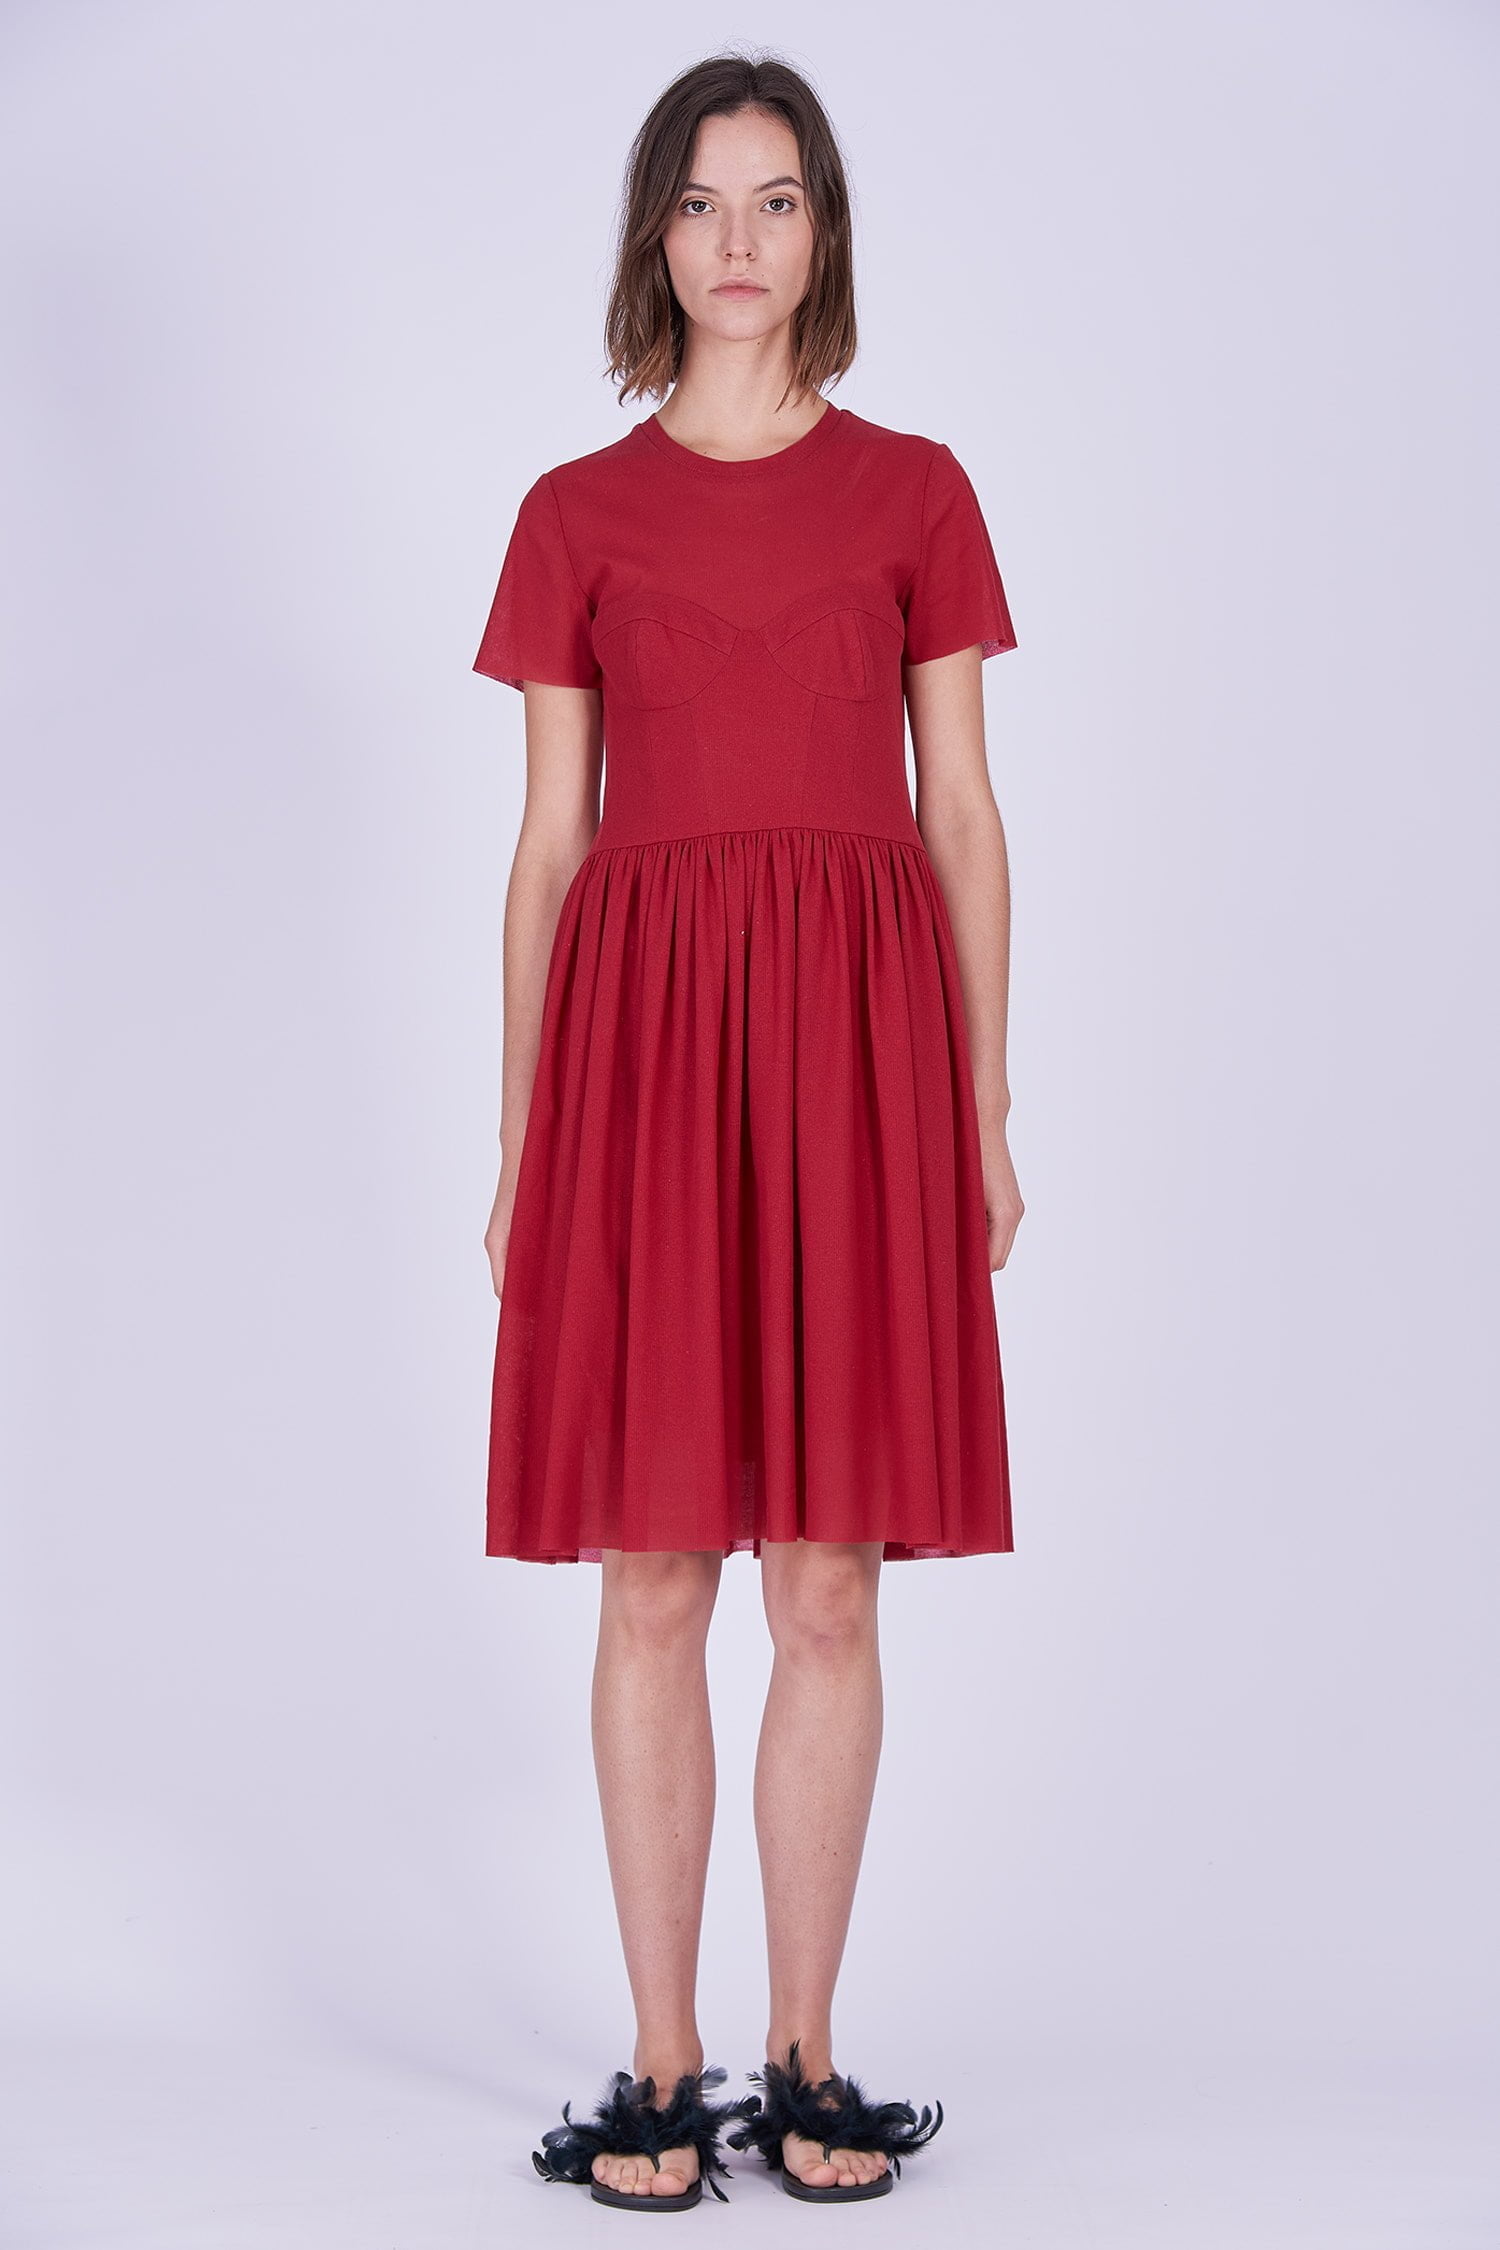 Acephala Ps2020 Red Midi Date Dress Czerwona Sukienka Wieczorowa Randka Front